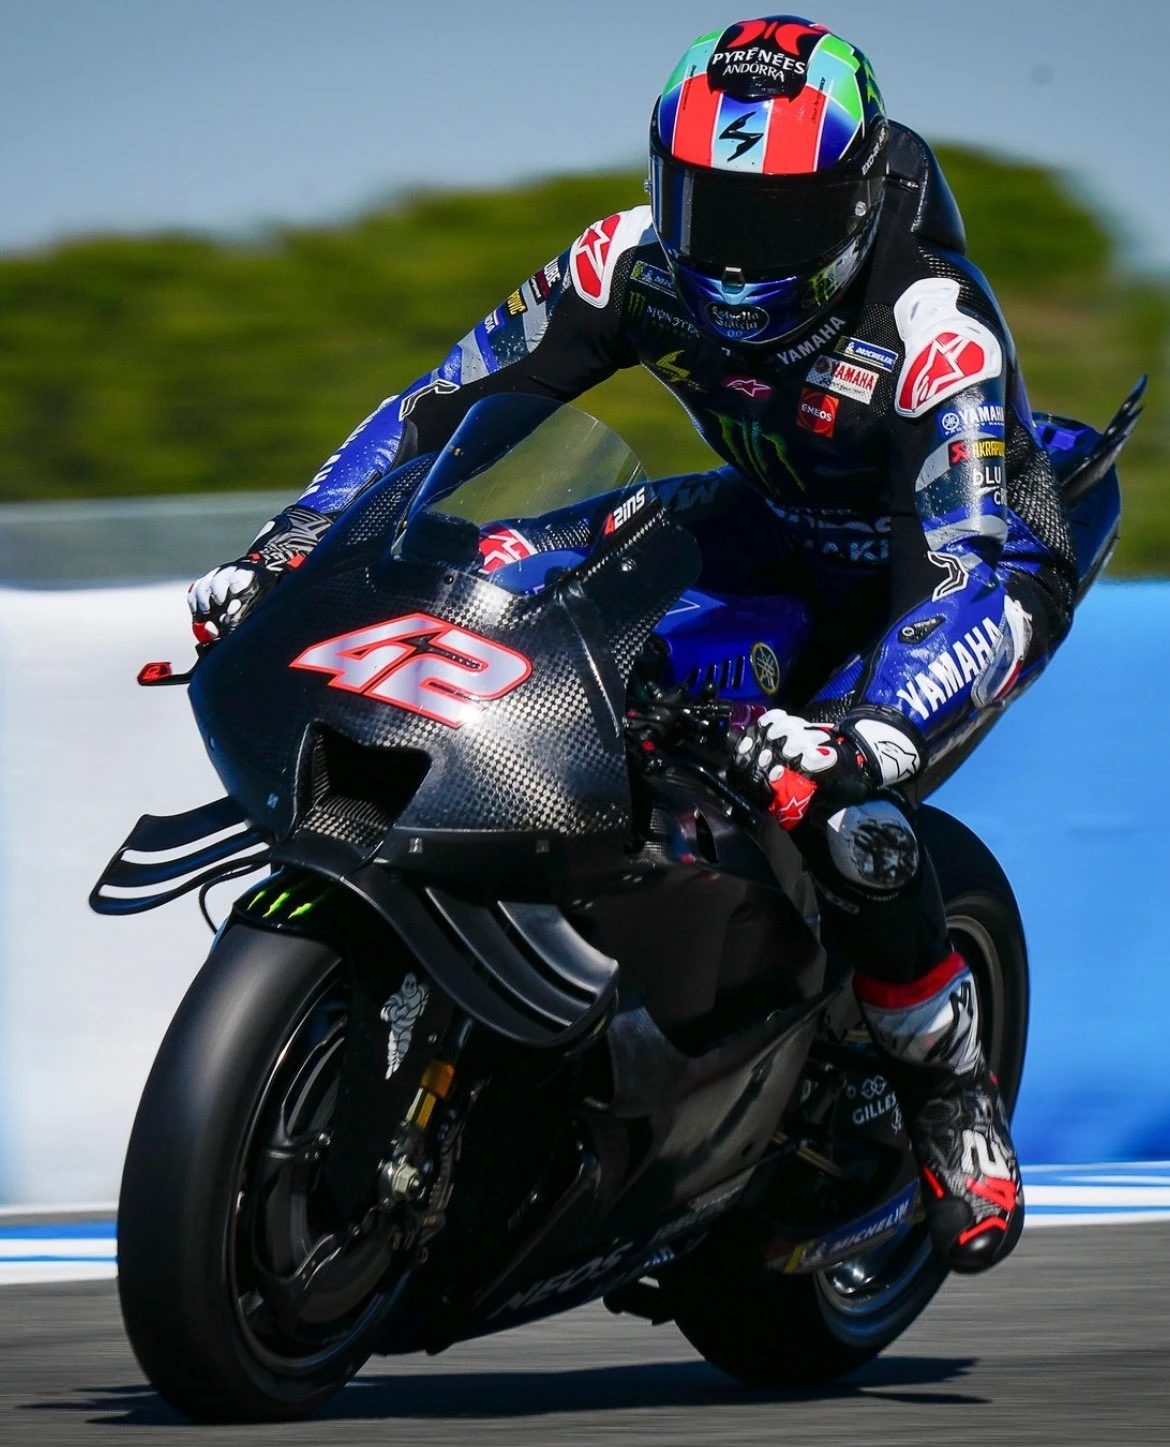 MotoGP Jerez Testi: Bu motosikletten pozitif bir şey alamayız gallery image 2